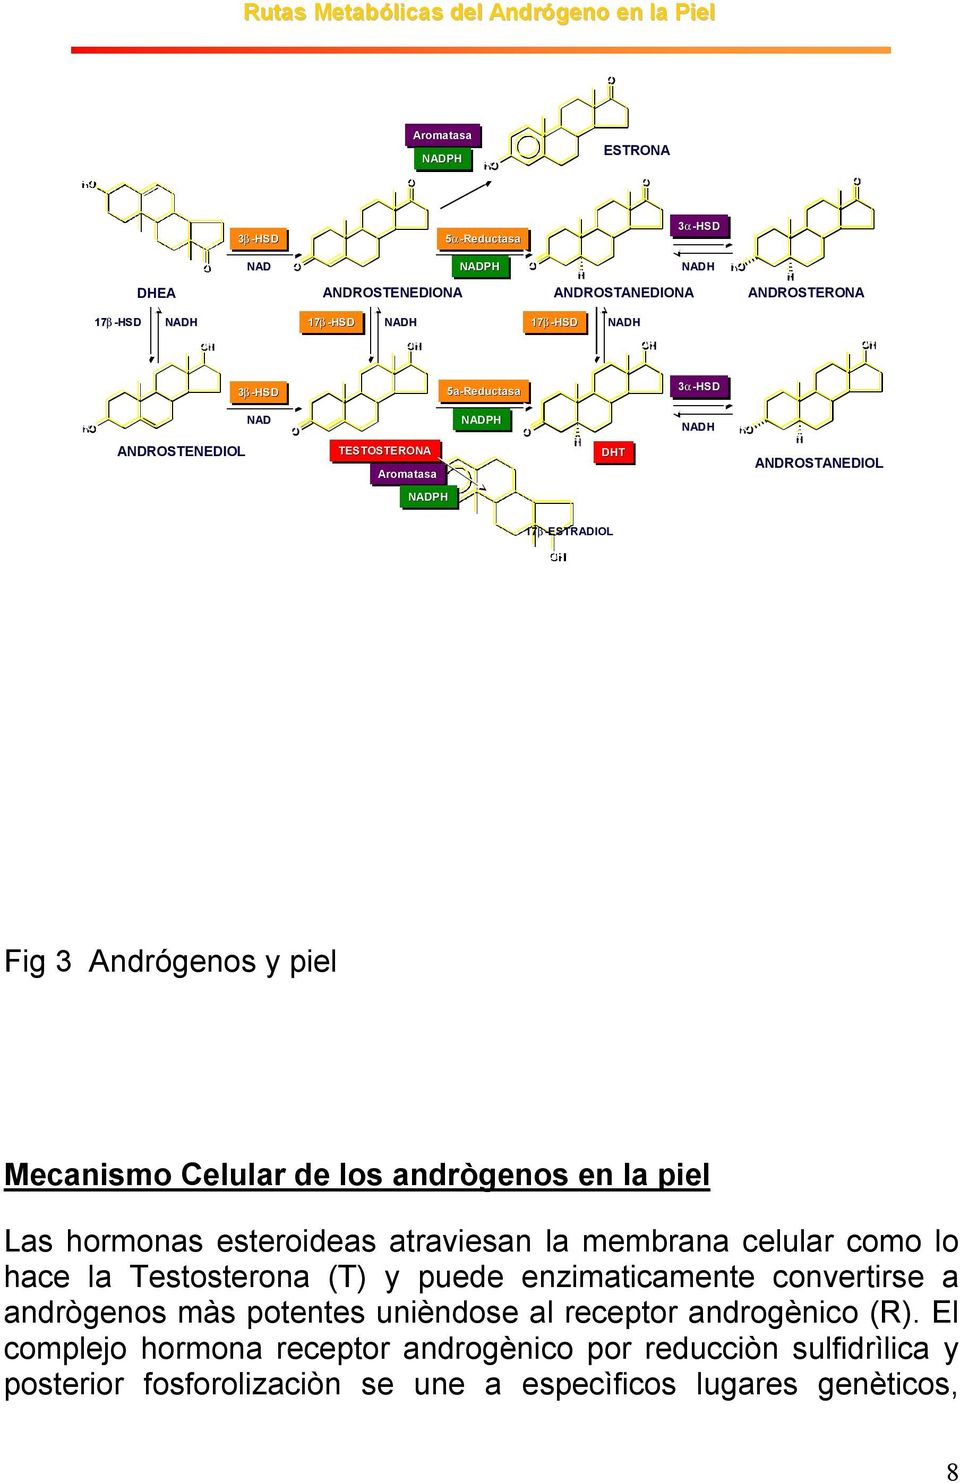 Celular de los andrògenos en la piel Las hormonas esteroideas atraviesan la membrana celular como lo hace la Testosterona (T) y puede enzimaticamente convertirse a andrògenos màs